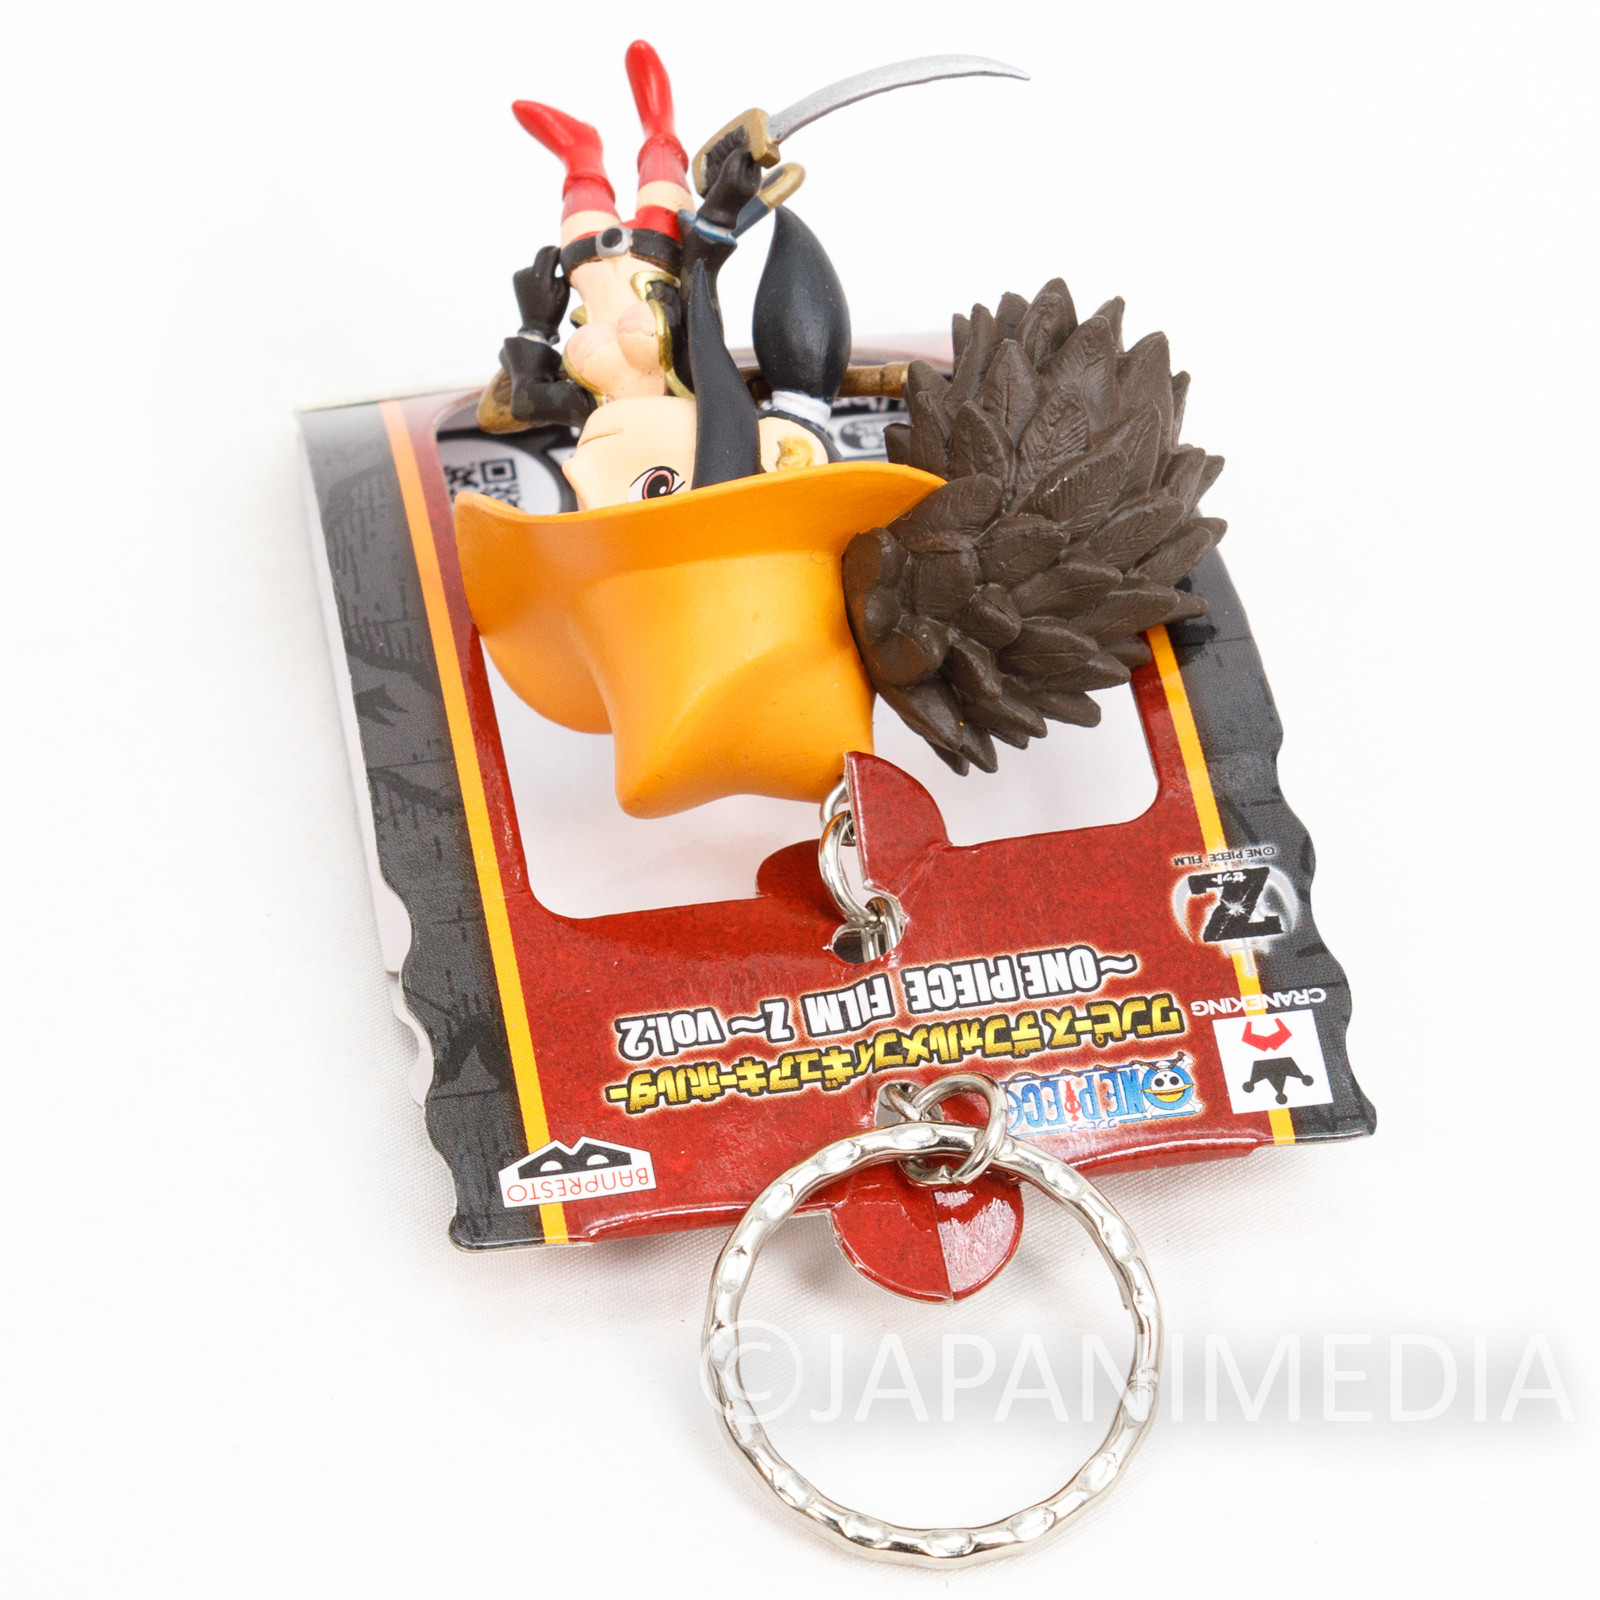 One Piece Film Z Nico Robin Figure Keychain Banpresto JAPAN ANIME